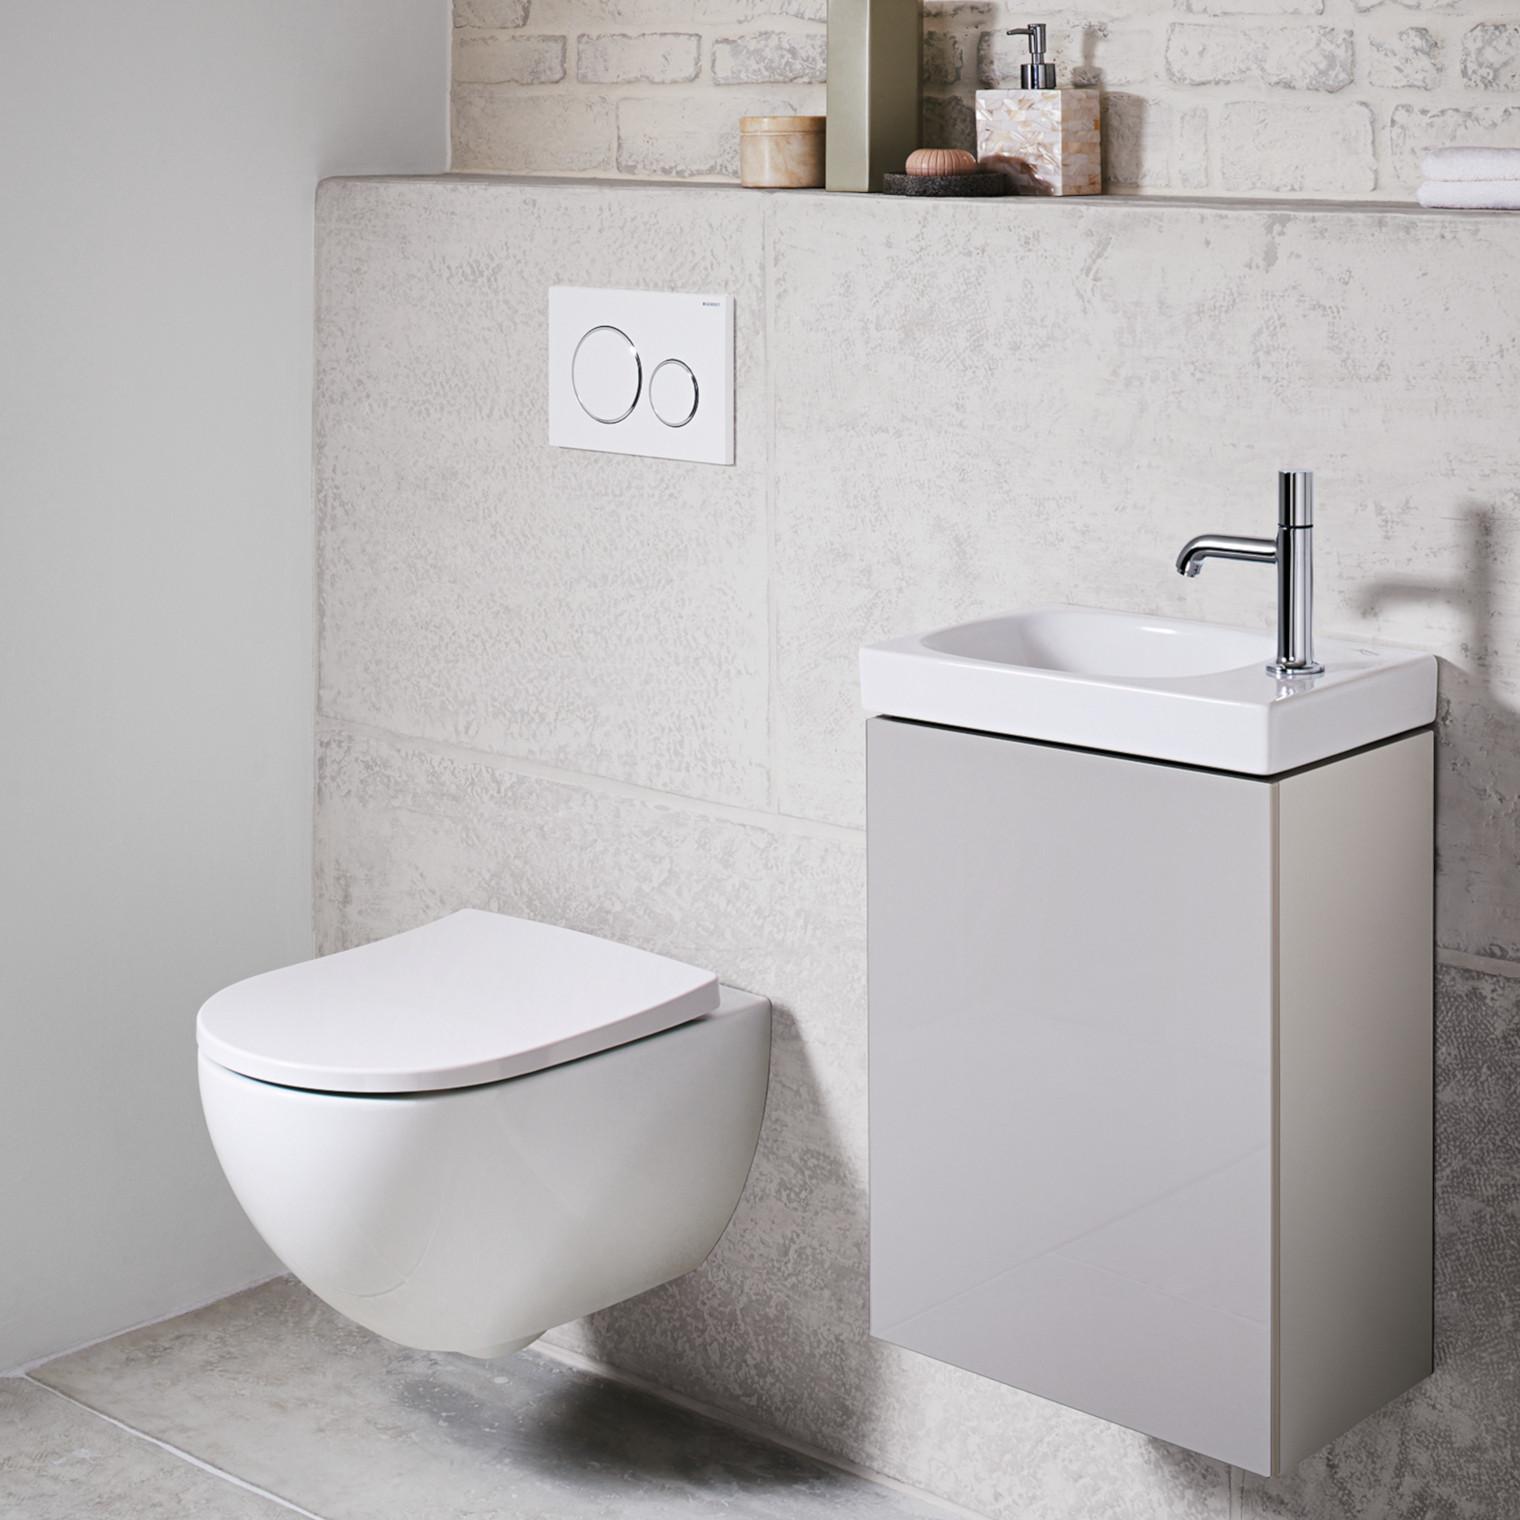 Seinä-wc voidaan asentaa turvallisesti myös remontoitavaan kylpyhuoneeseen. Kuvassa Geberitin uuden Acanto-sarjan wc-istuin ja pesuallas.